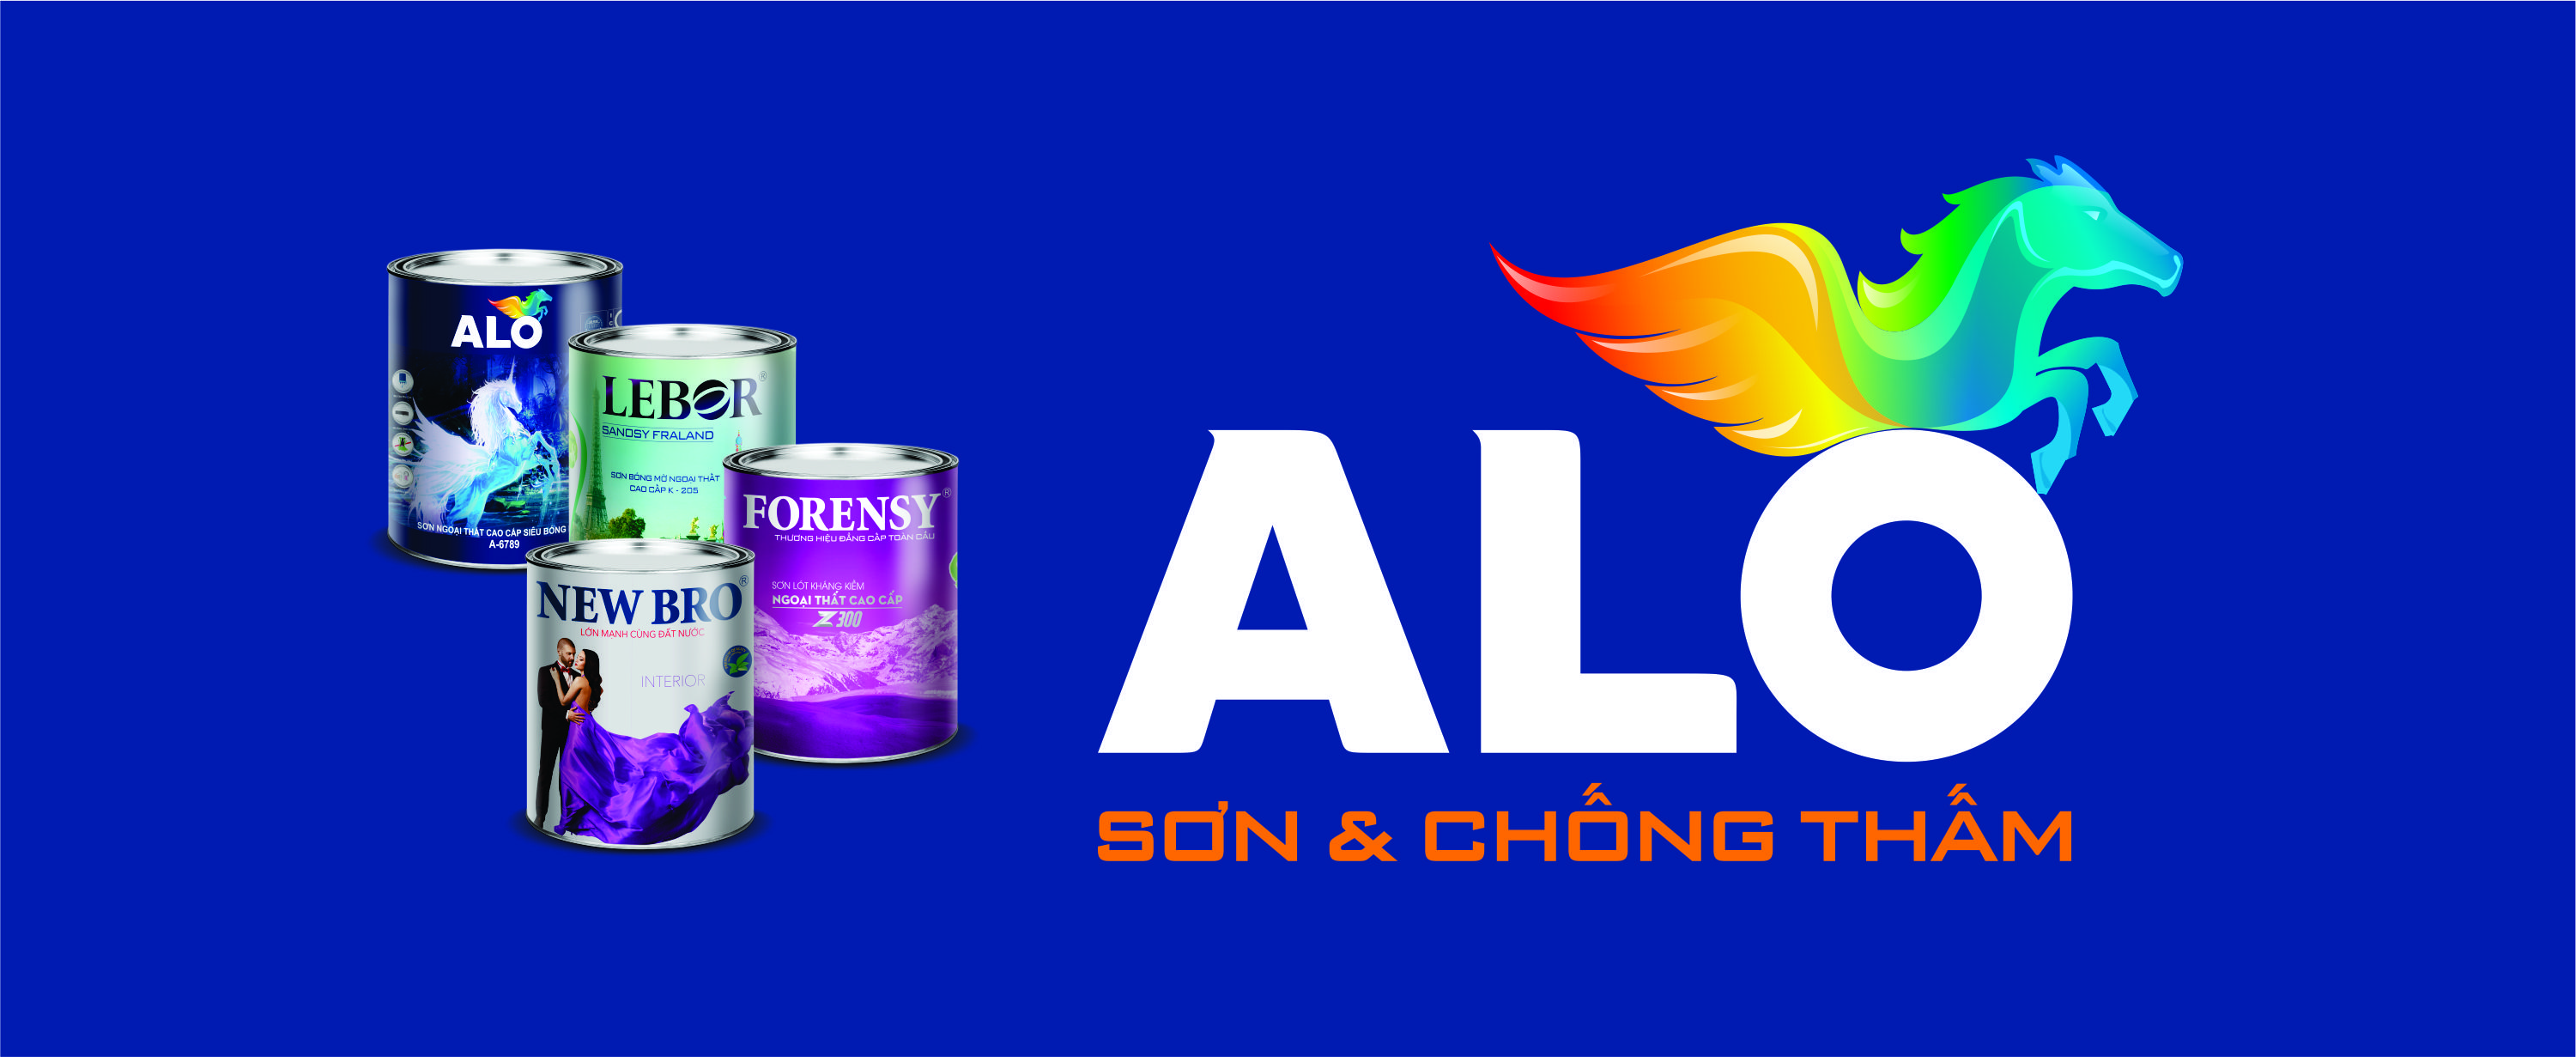 Alo Việt Nam - Tập đoàn hàng đầu trong ngành sơn nước. Được đánh giá cao về chất lượng, độ bền và tính thẩm mỹ, Alo đang trở thành lựa chọn hàng đầu cho các chủ đầu tư công trình. Hãy khám phá hình ảnh để thấy được sự khác biệt của Alo!